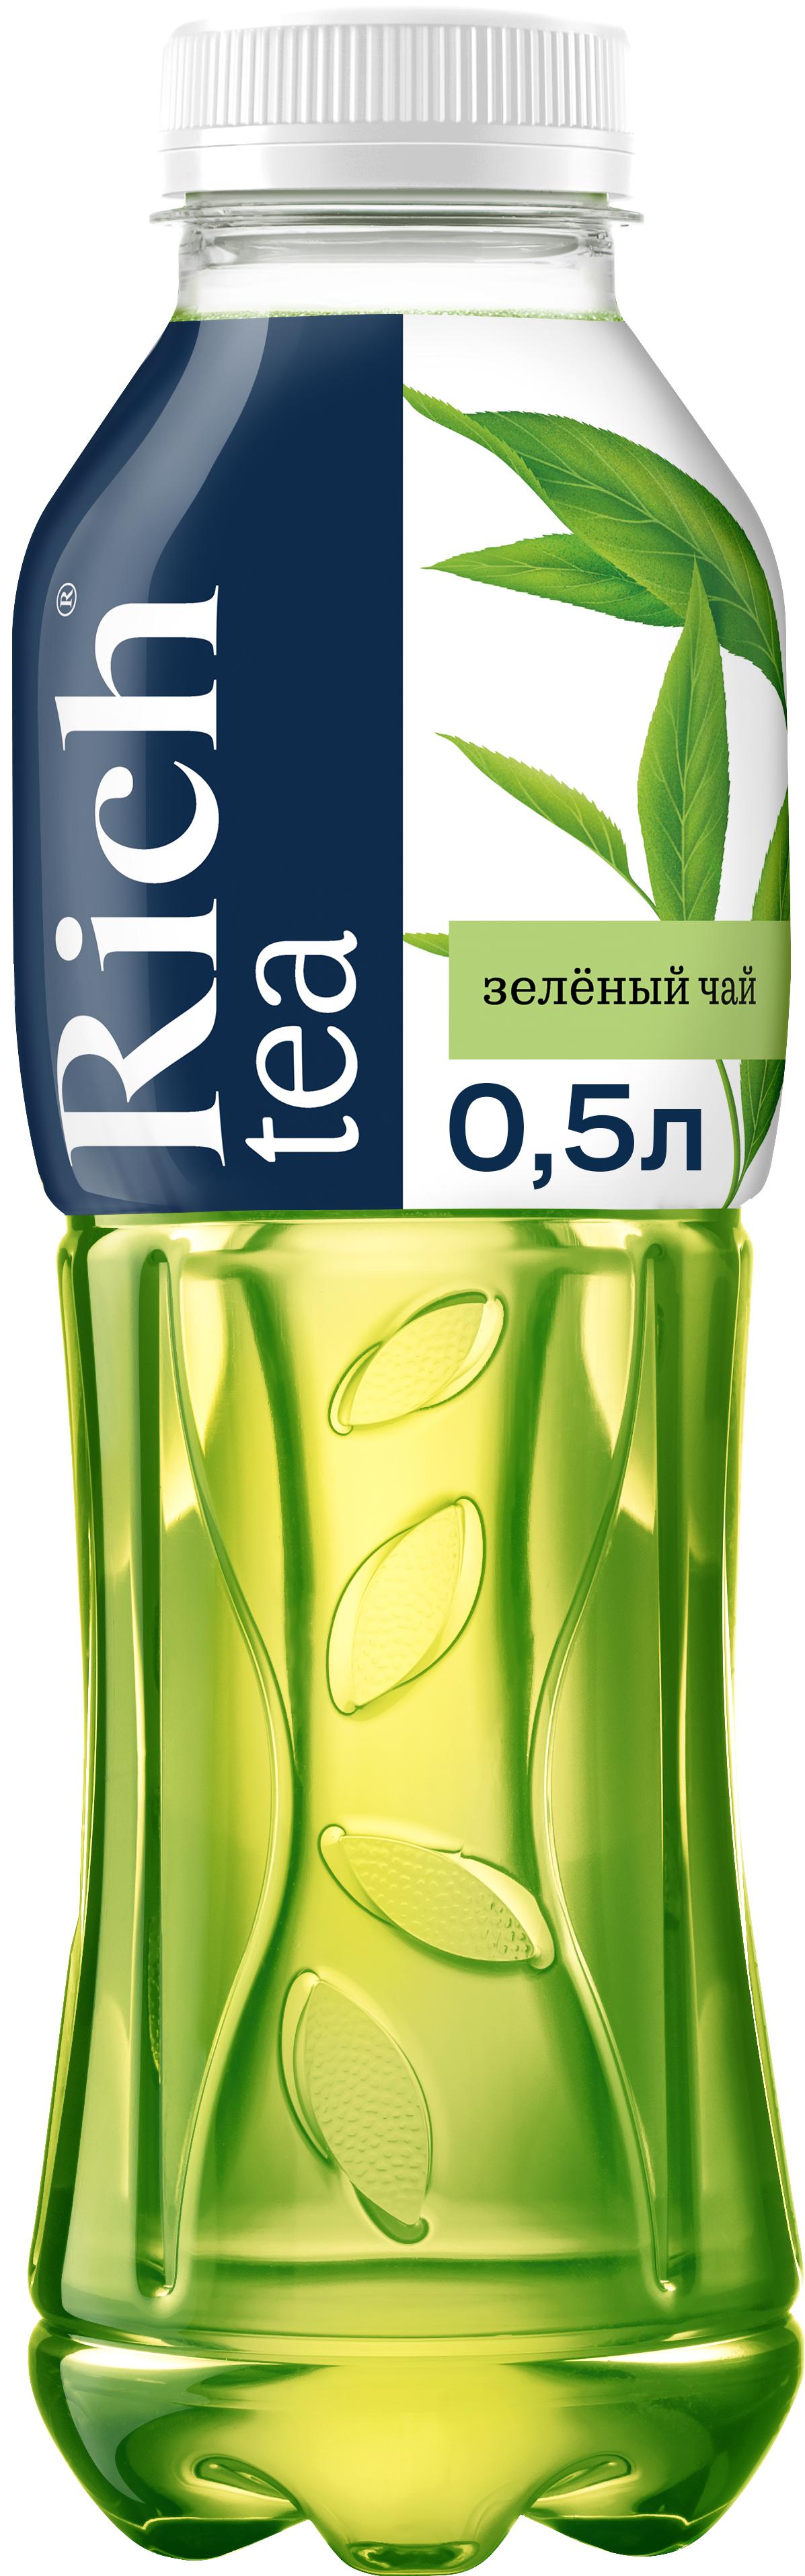 Напиток Rich Зеленый чай, 500 мл., ПЭТ